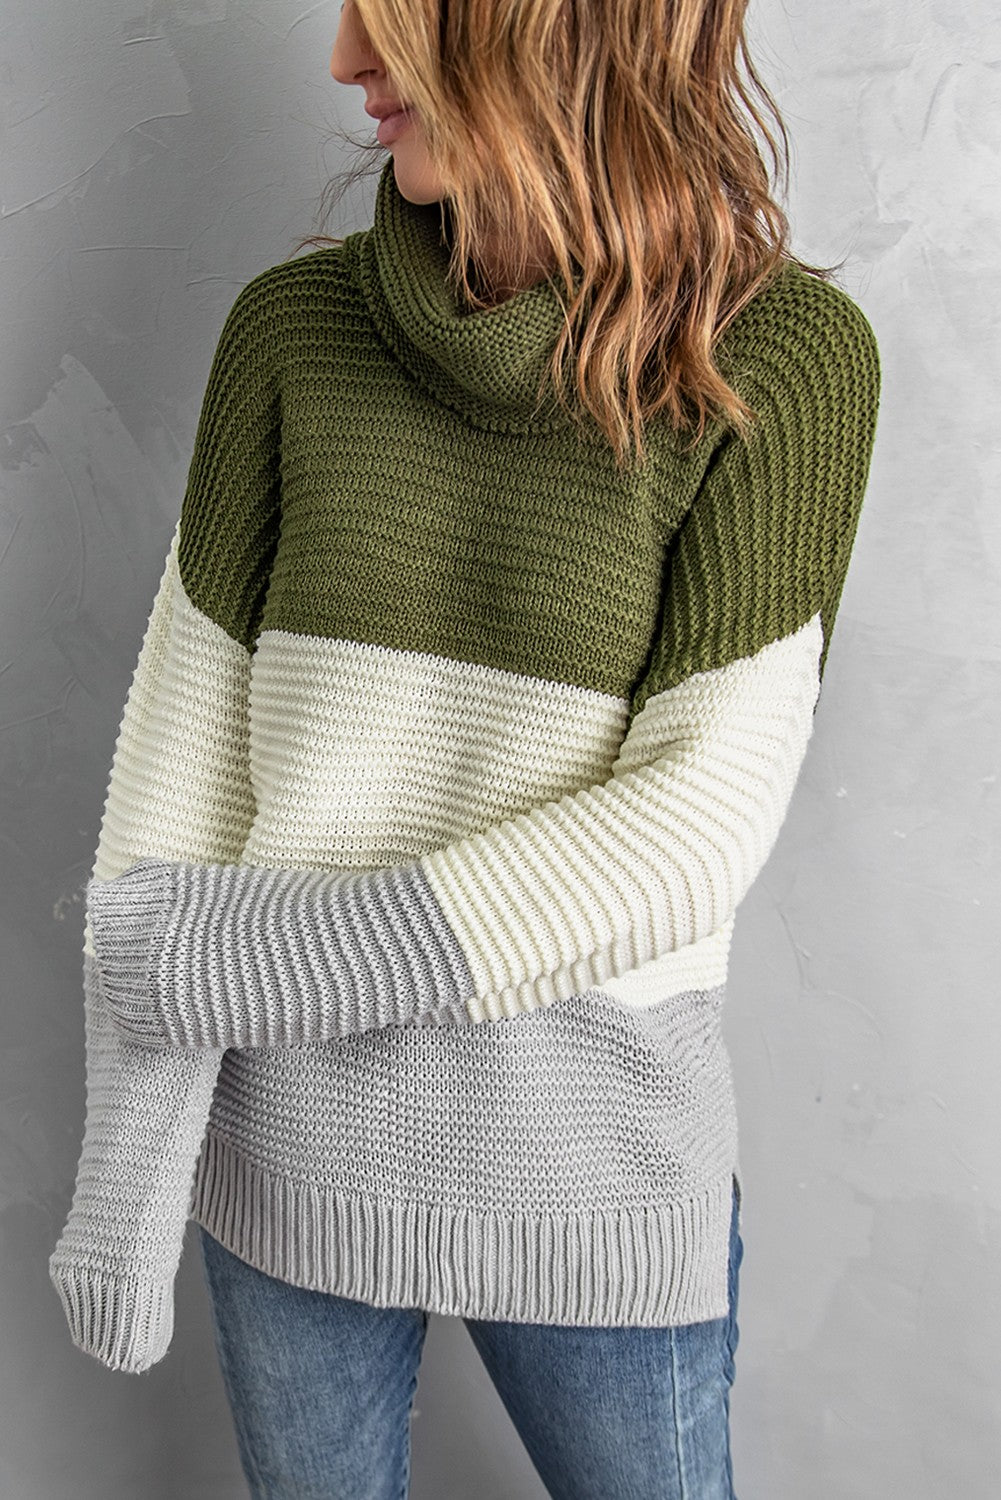 Maglione pullover a blocchi di colore con collo alto verde